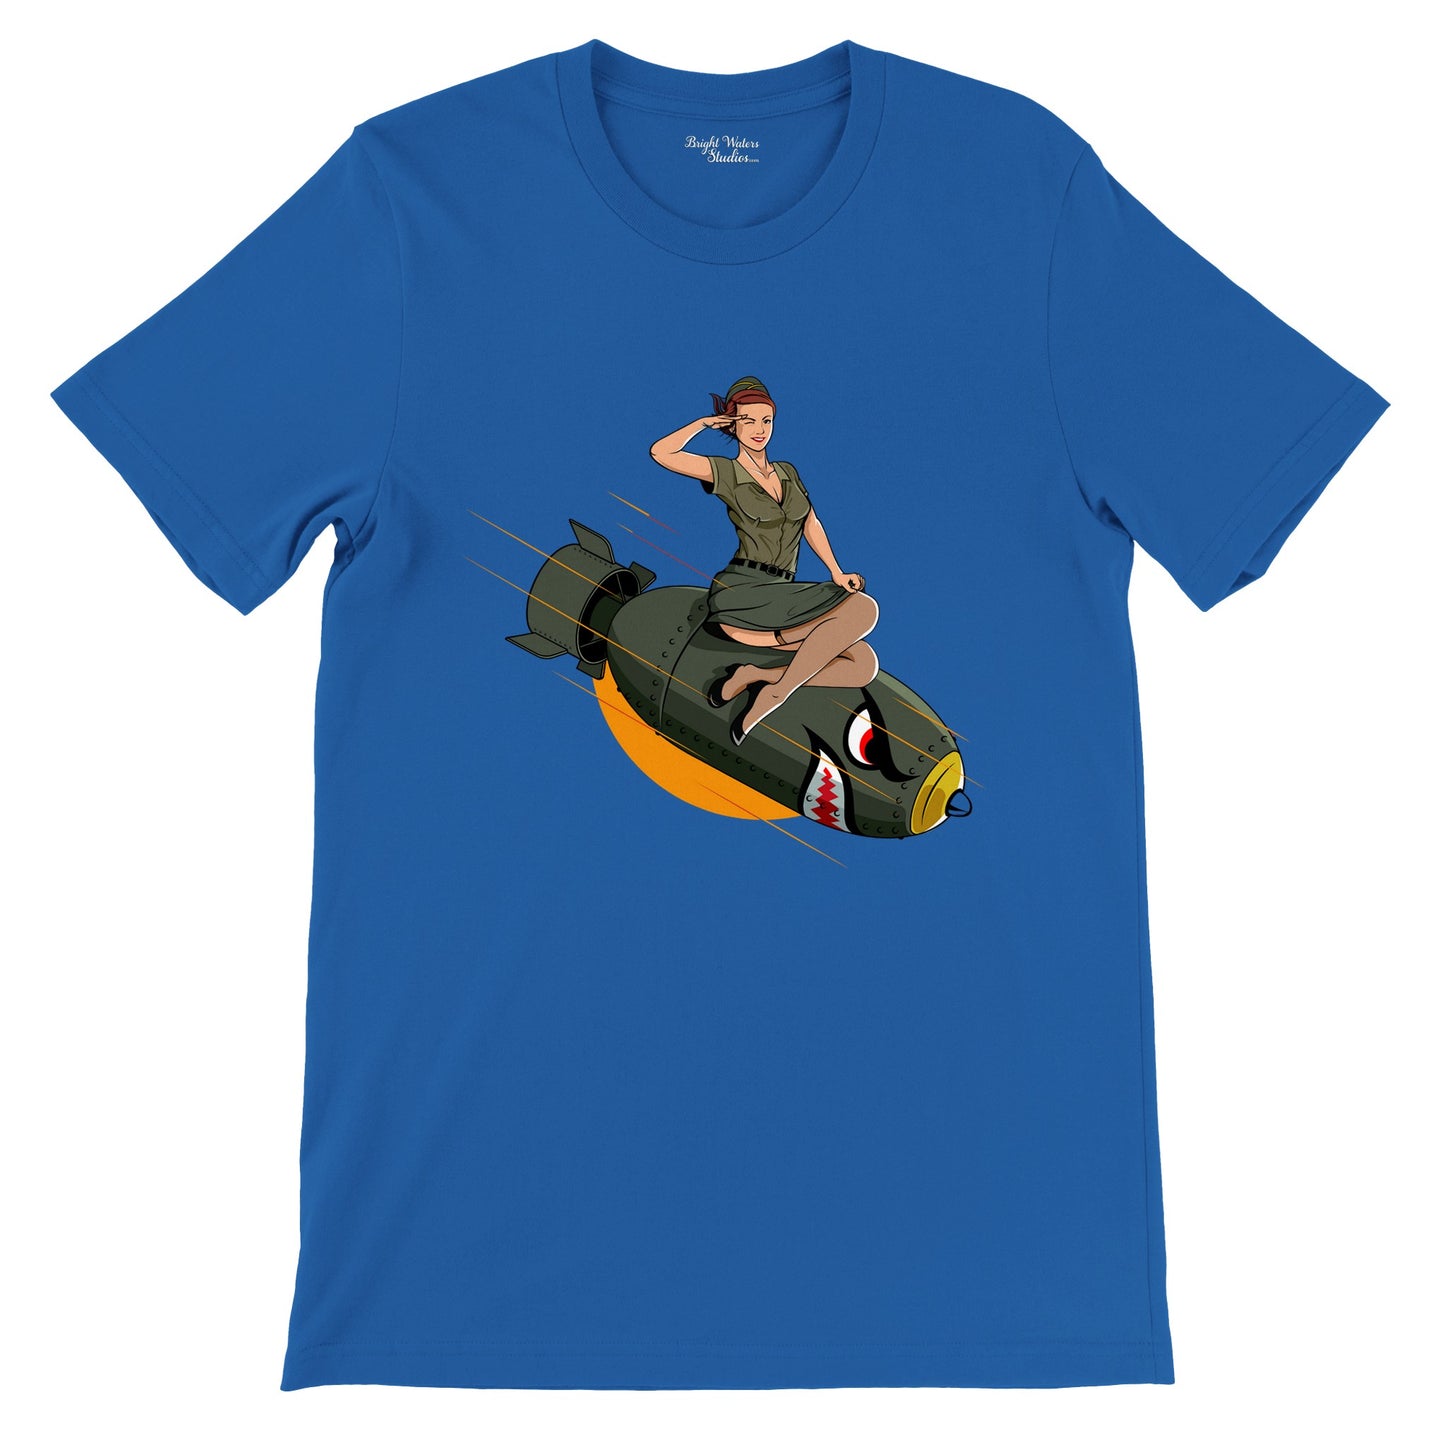 Pin-upgirl on bomb T-shirt